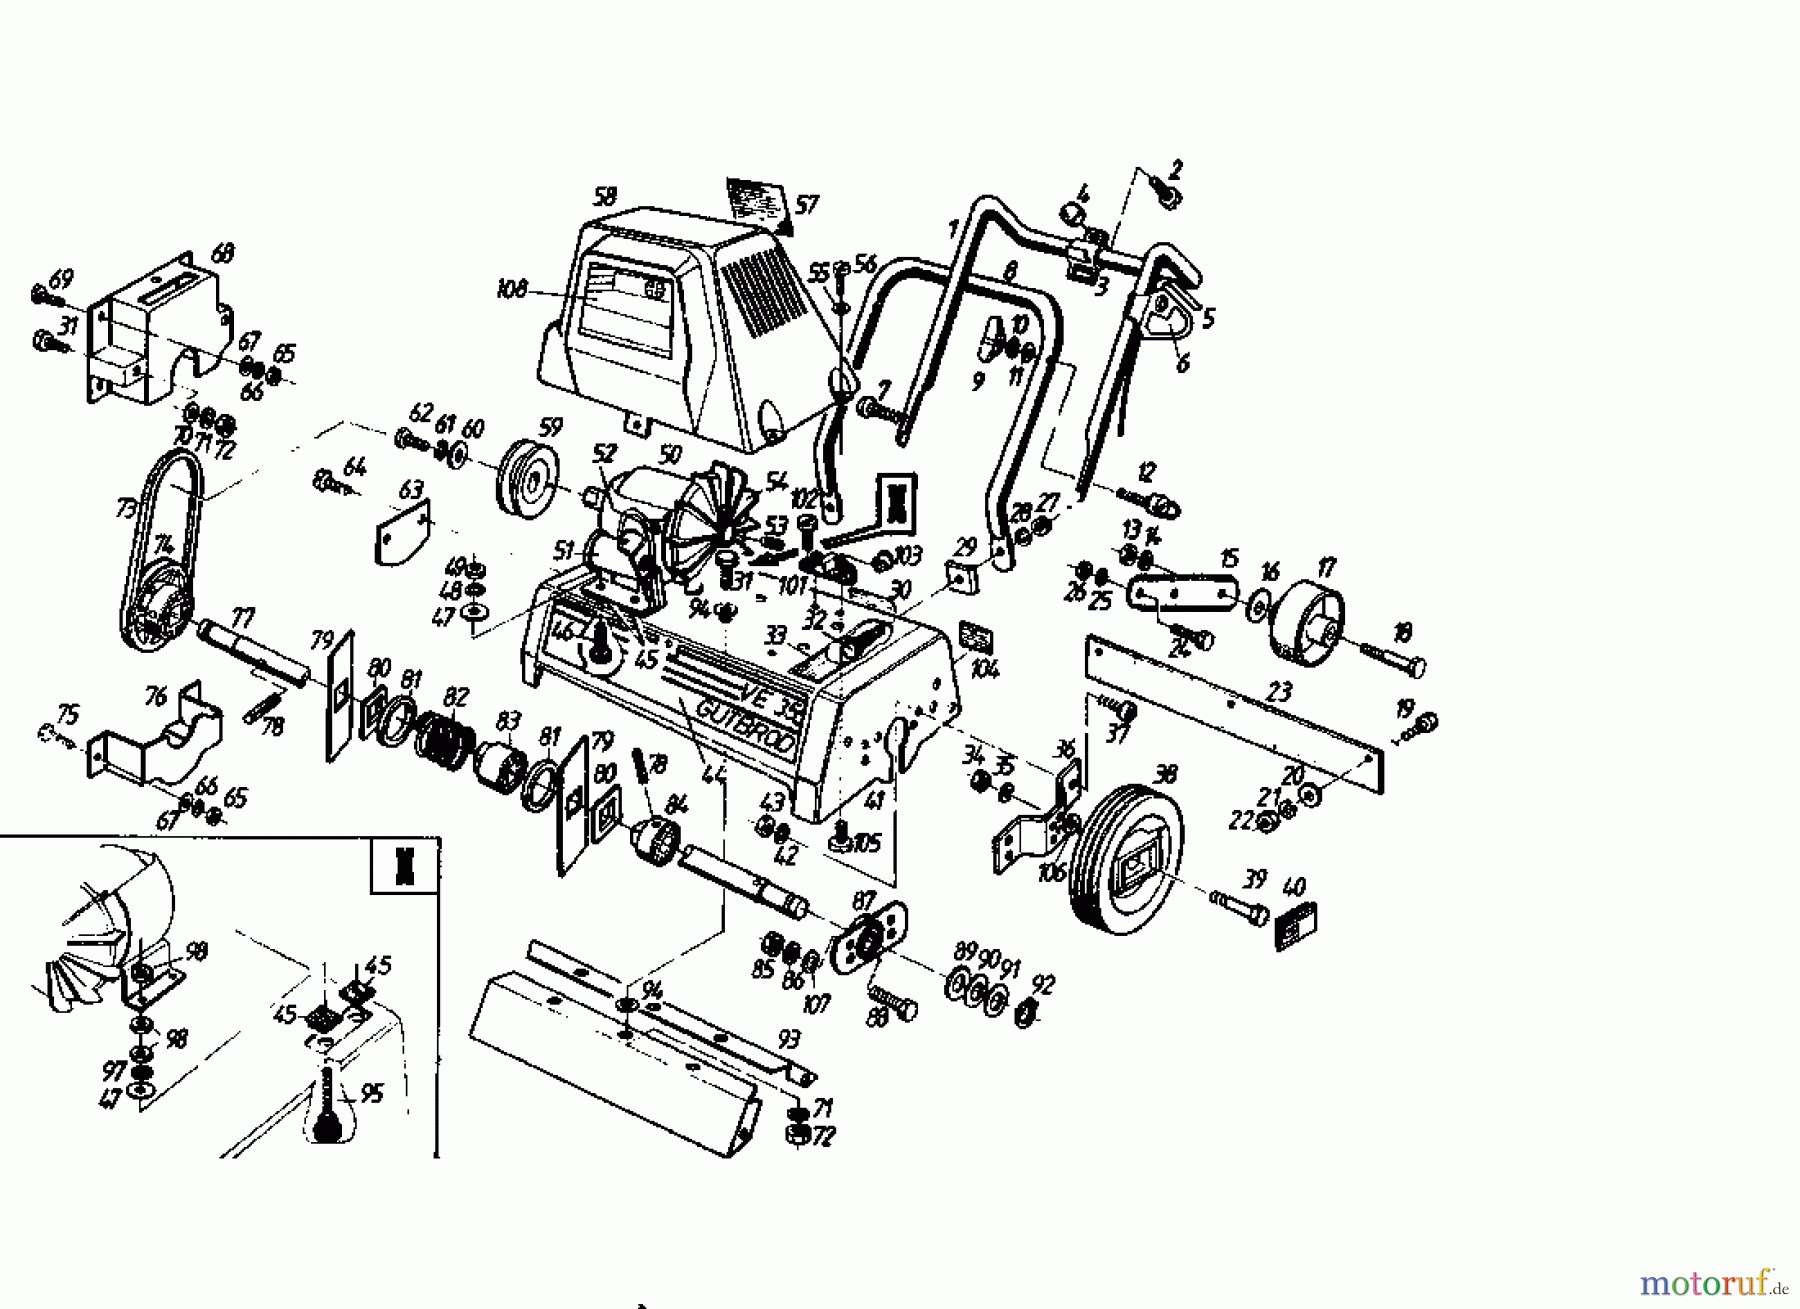  Gutbrod Scarificateur électrique VE 35 02645.09  (1985) Machine de base